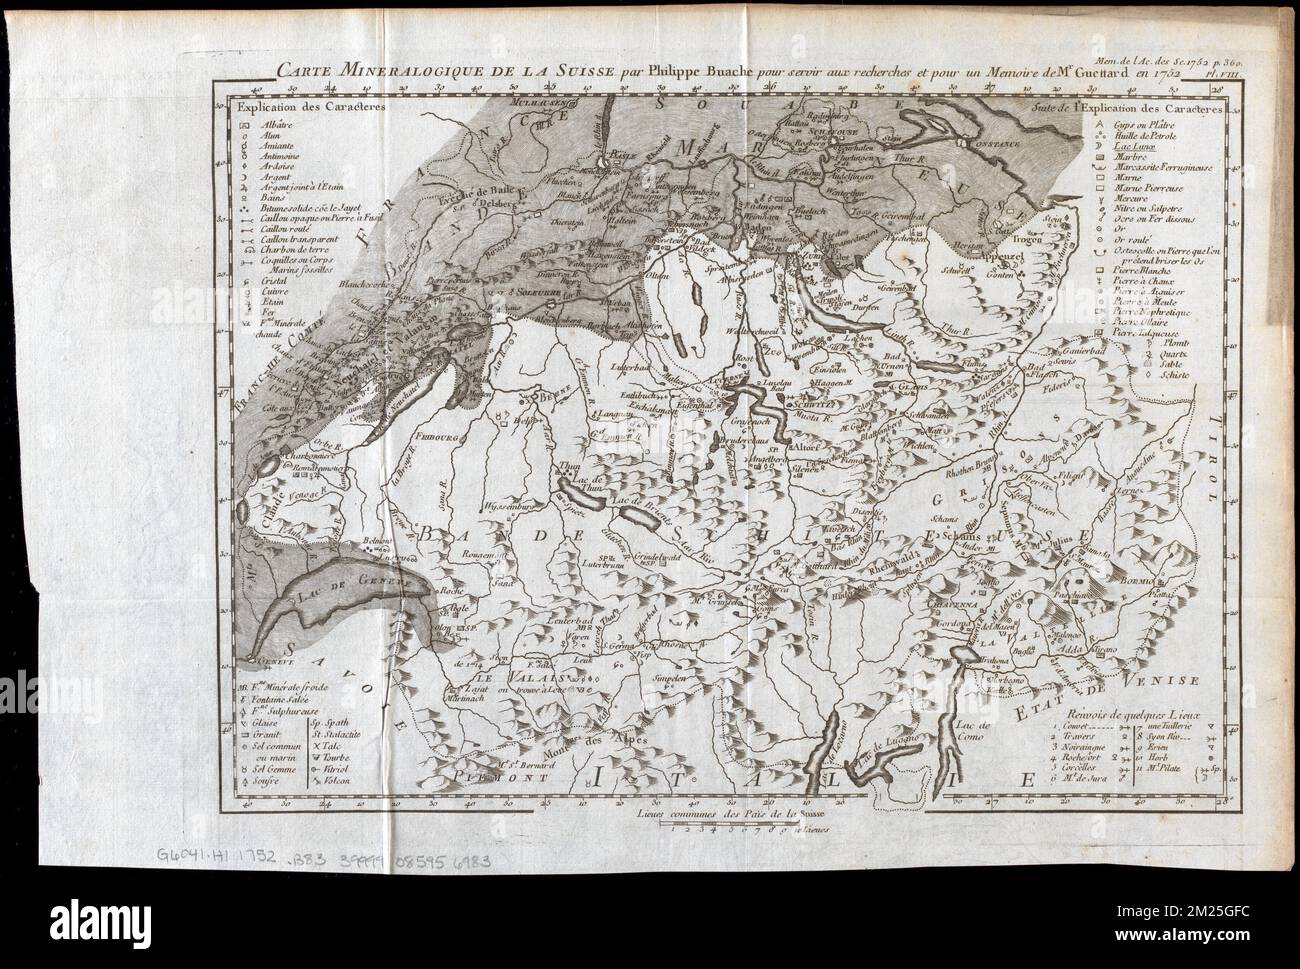 Carte mineralogique de la Suisse , Switzerland, Maps, Early works to ...